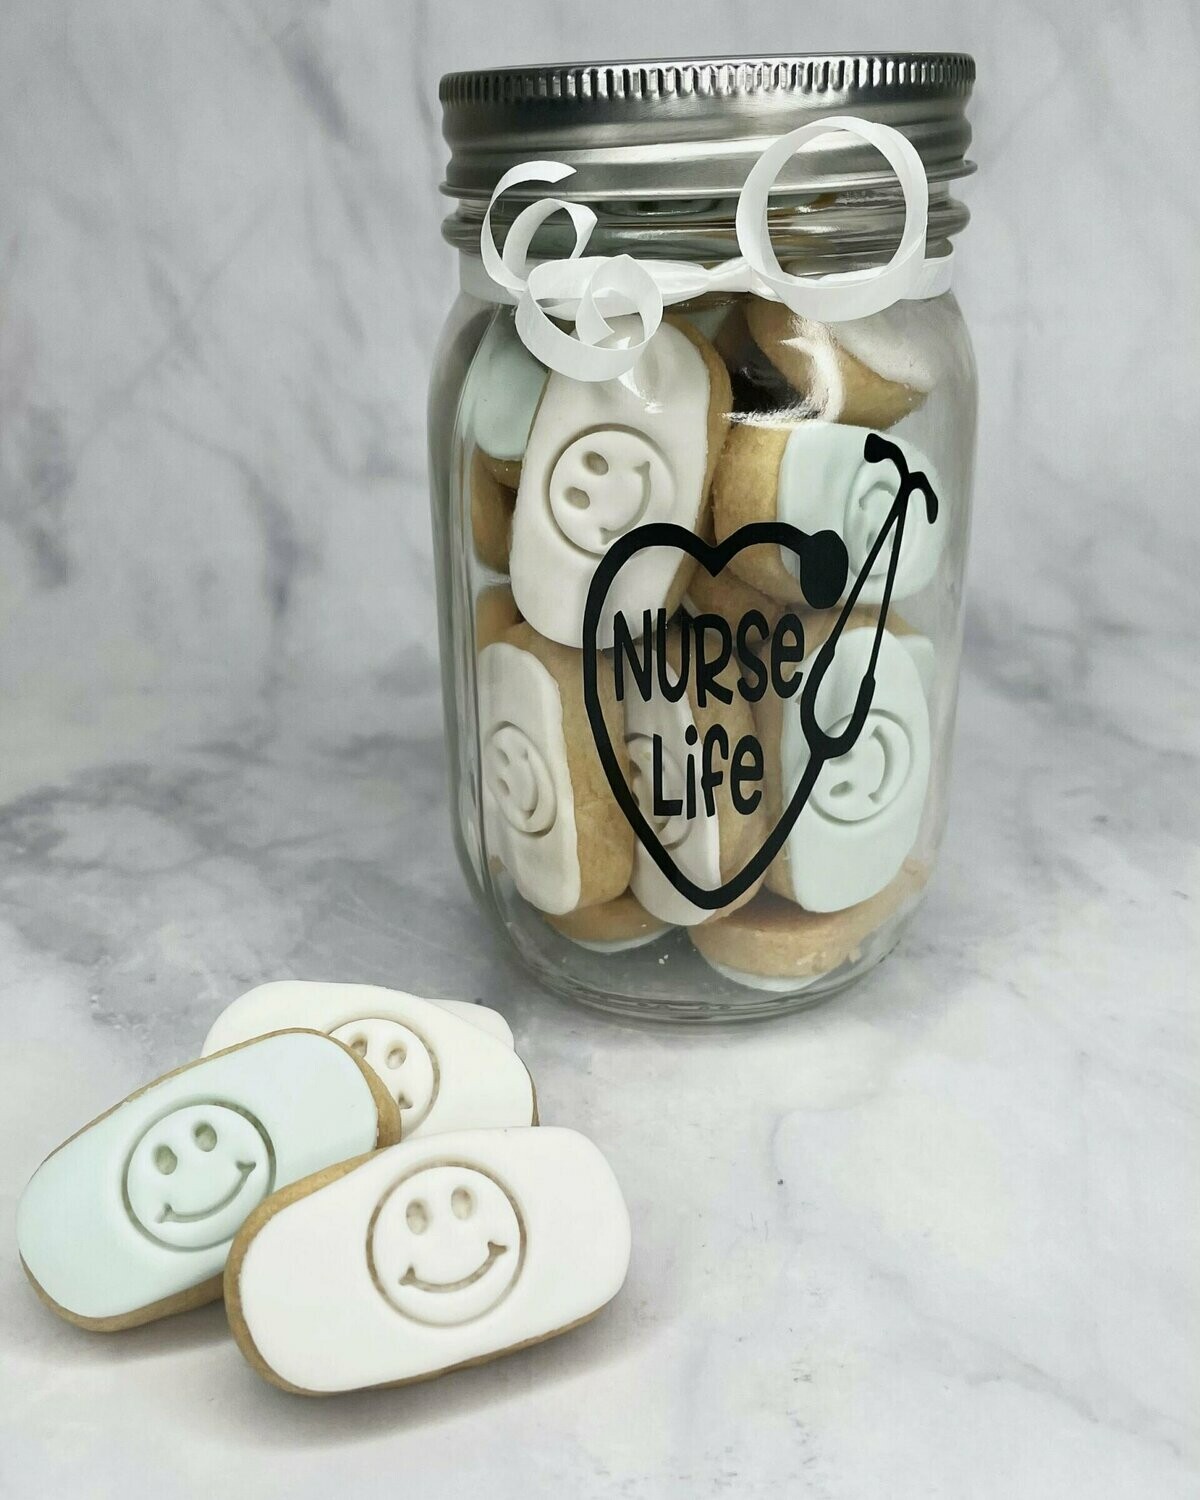 Nurse Appreciation - Nurse Life jar